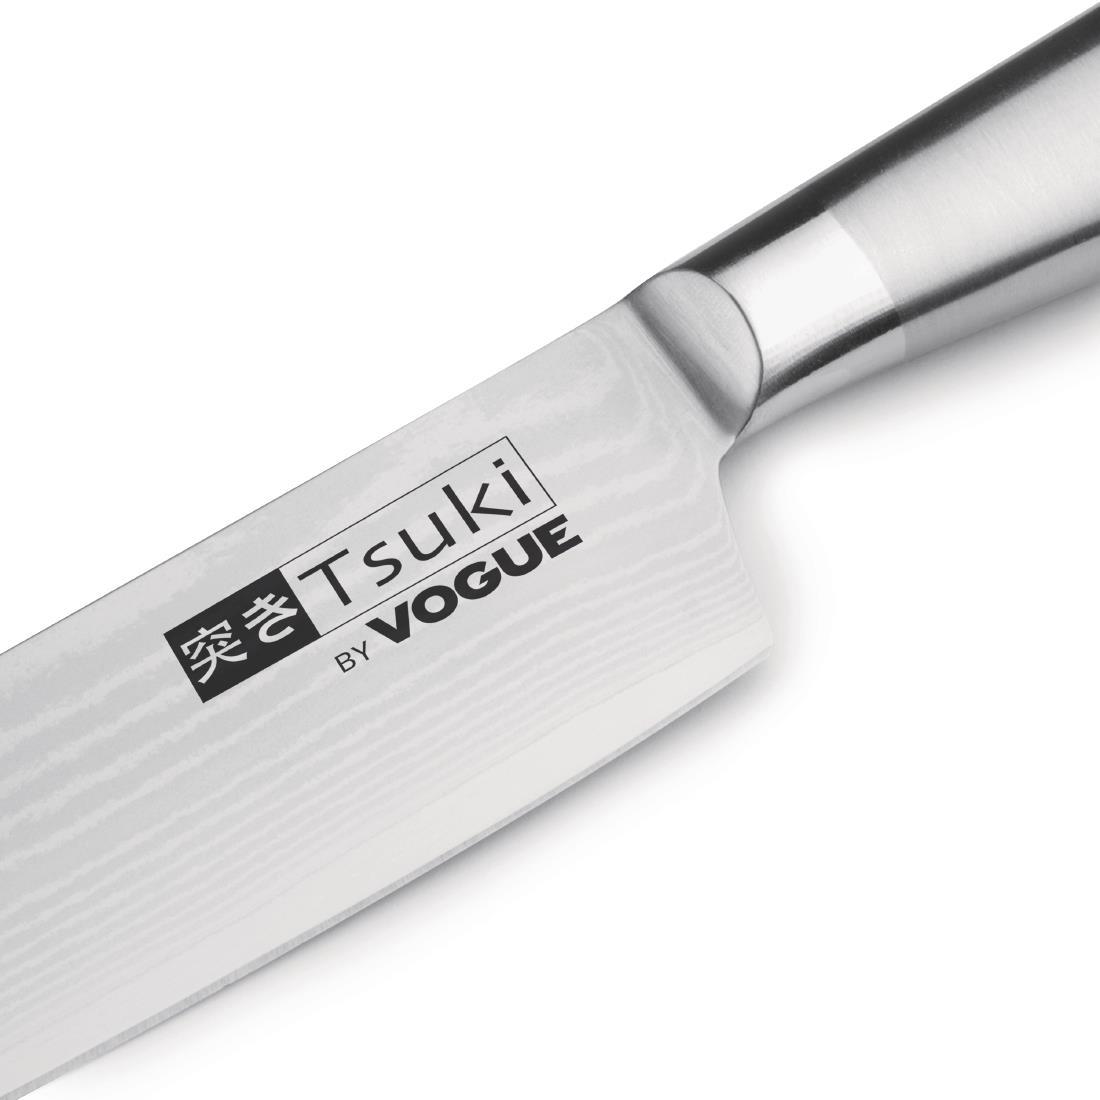 Vogue Tsuki Series 8 Santoku Knife 17.5cm - DA441  - 2